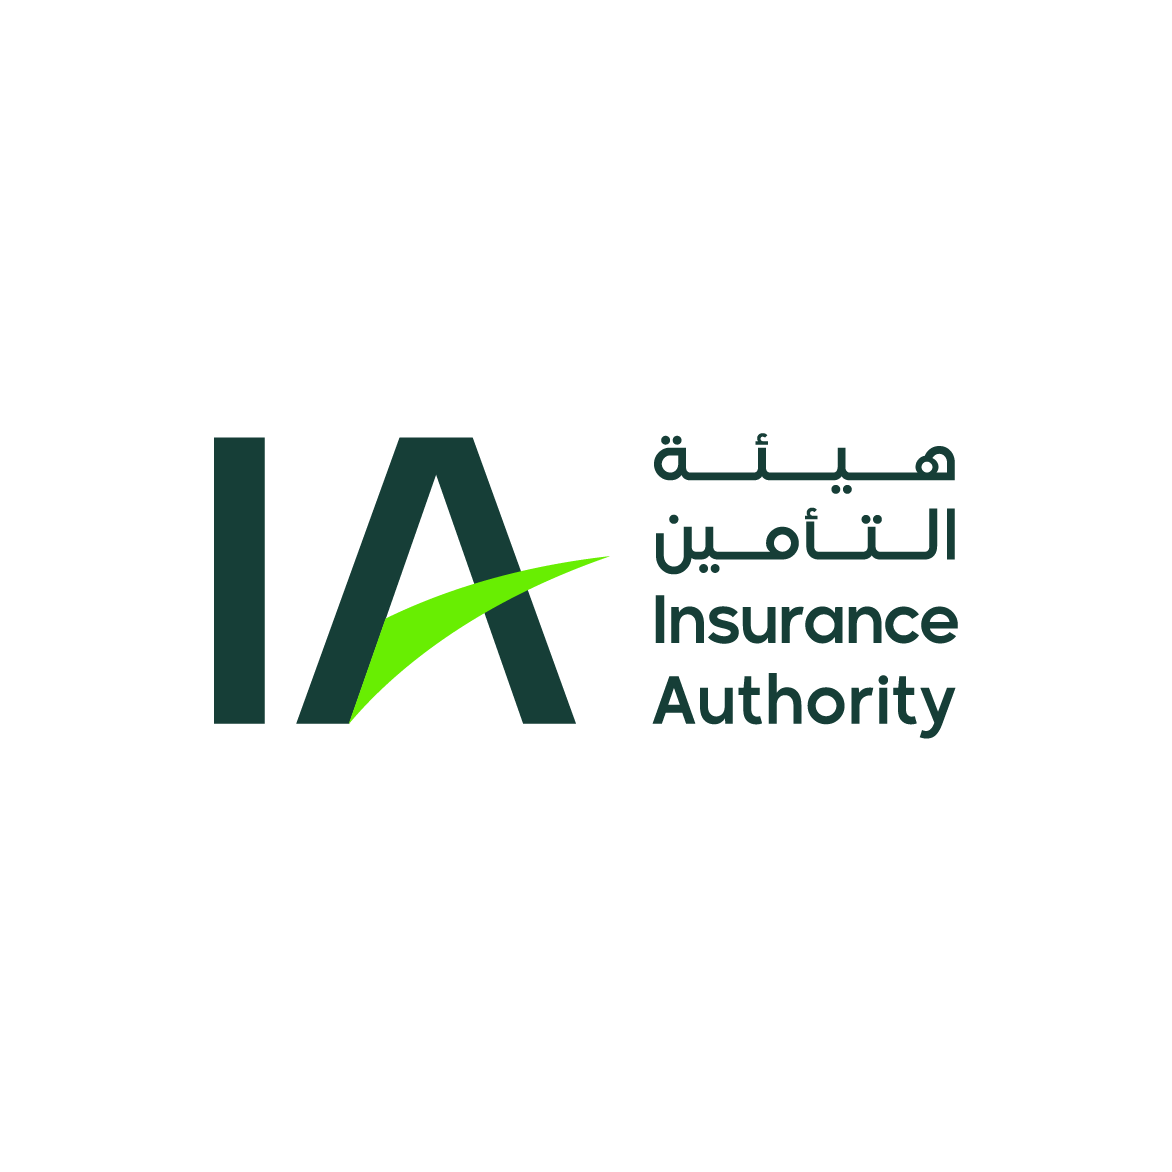 هيئة التأمين تشارك في المؤتمر العام الـ 34 للتأمين العربي بسلطنة عمان